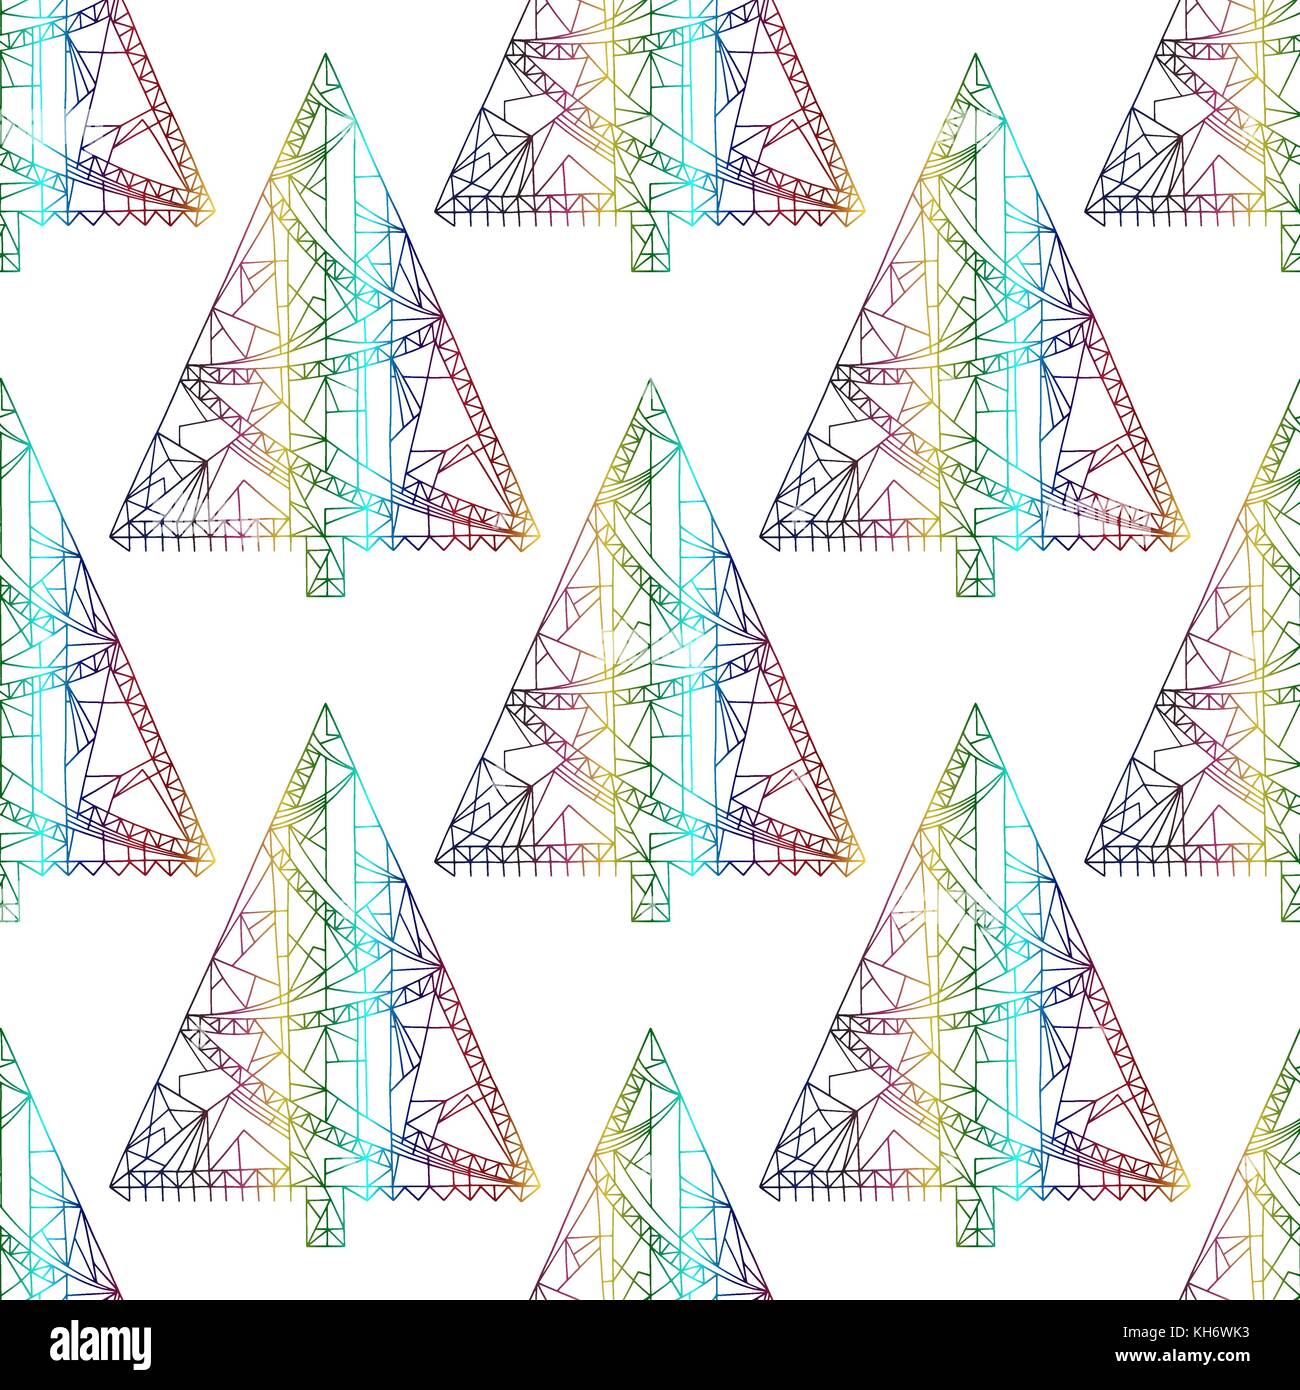 Weihnachtsbäume Muster. Elegante abstrakte Xmas nahtlose Hintergrund. Winterurlaub vektor Textur für Tapeten, Geschenkpapier, Textildesign, Surf Stock Vektor